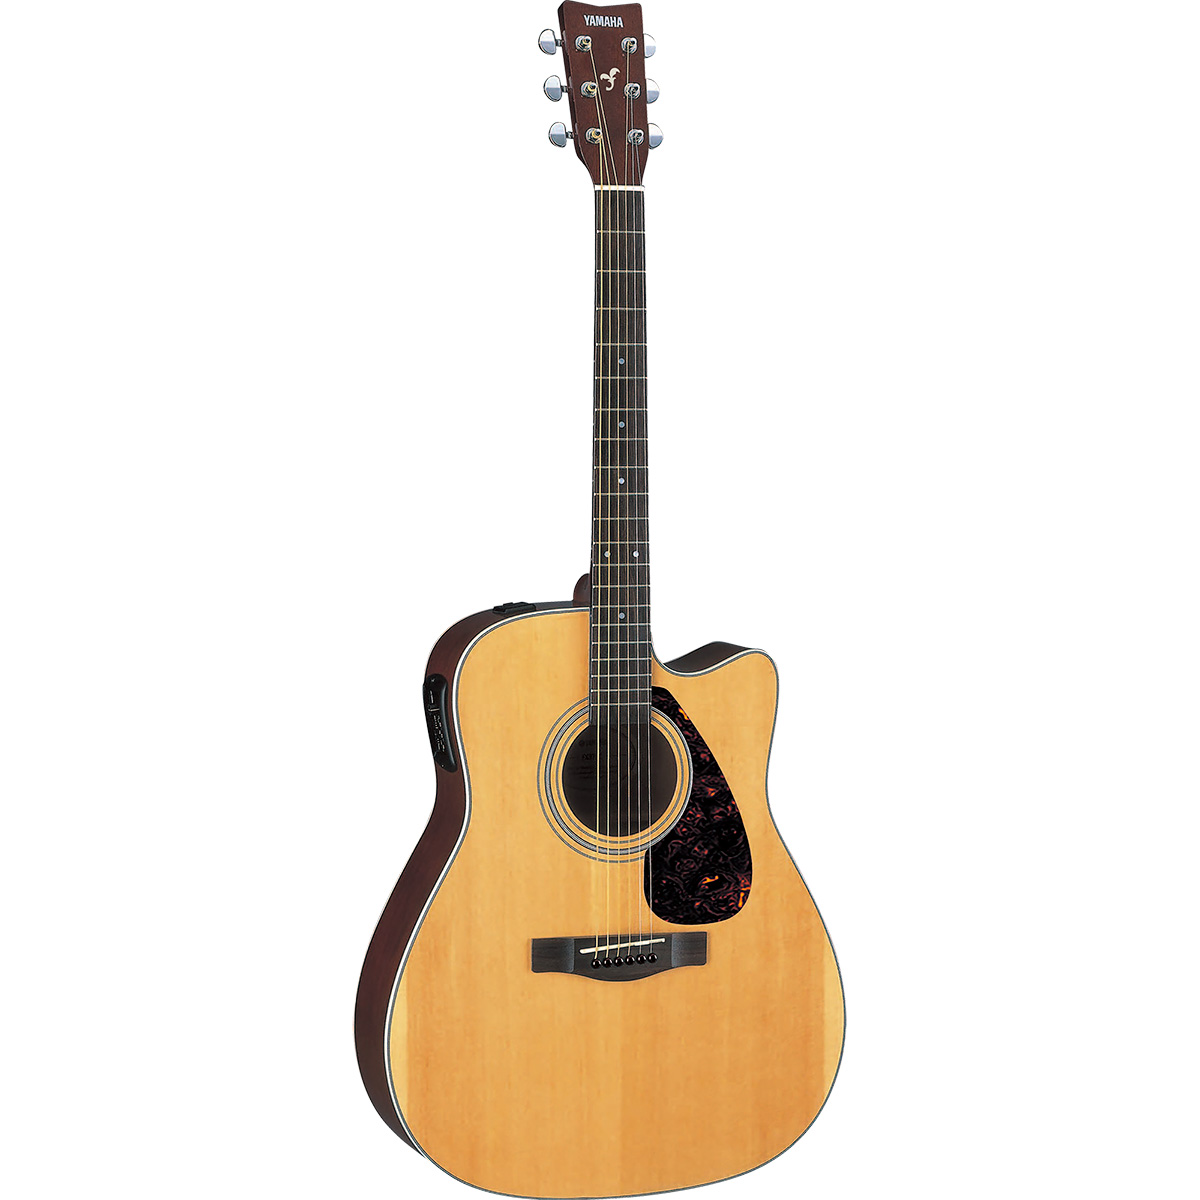 YAMAHA FX370C ナチュラル アコースティックギター初心者12点セット エレアコギター トラッドウェスタン・カッタウェイ